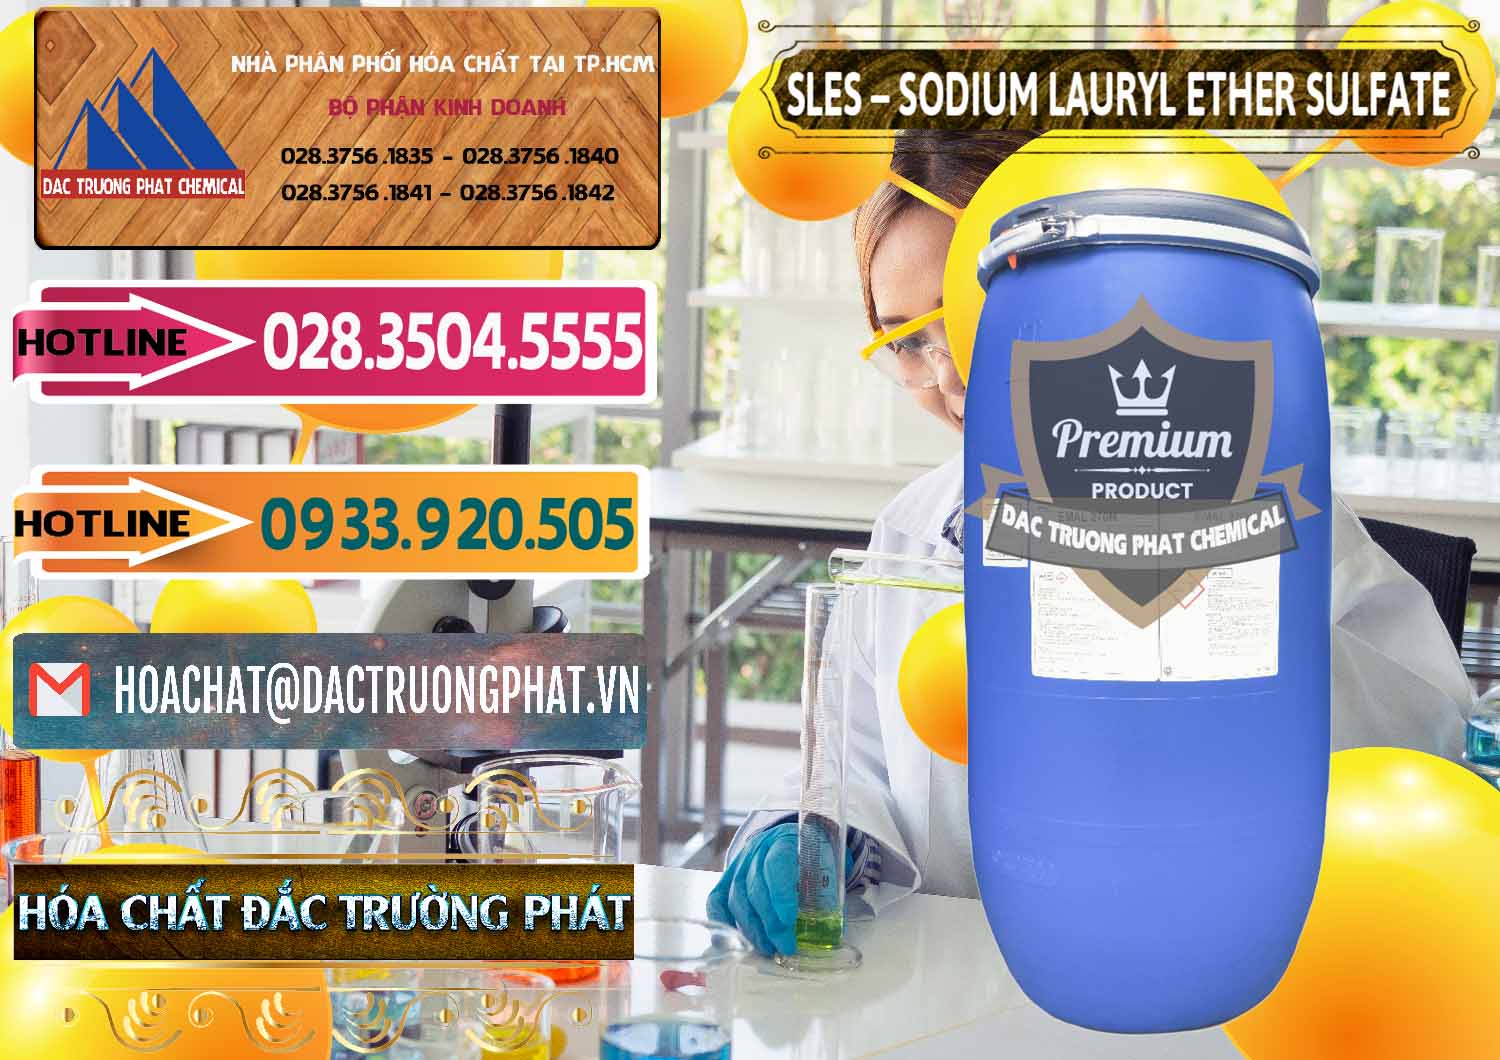 Cty chuyên nhập khẩu ( bán ) Chất Tạo Bọt Sles - Sodium Lauryl Ether Sulphate Kao Indonesia - 0046 - Nơi bán - cung cấp hóa chất tại TP.HCM - dactruongphat.vn